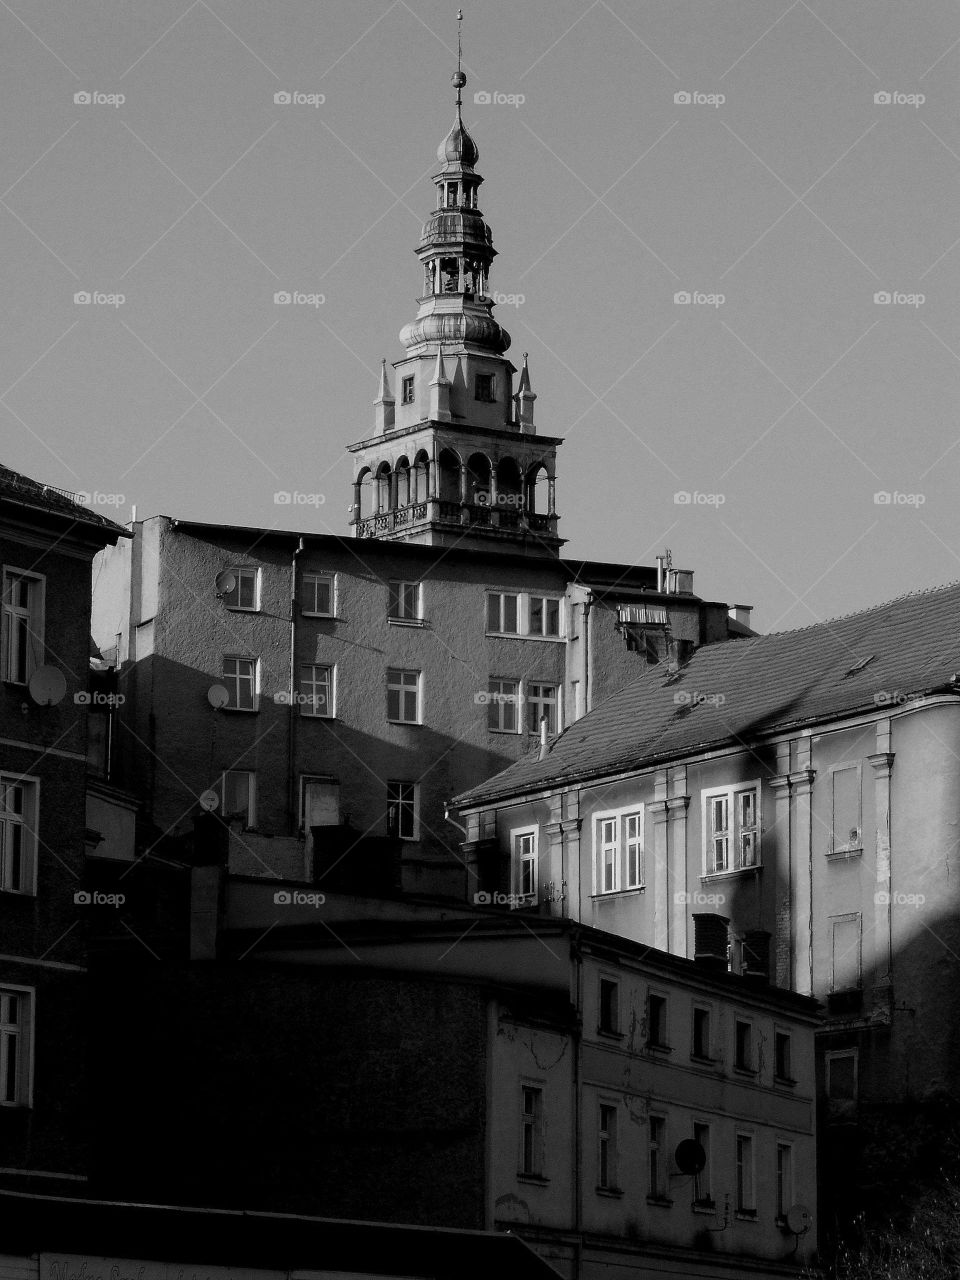 My old city Kłodzko